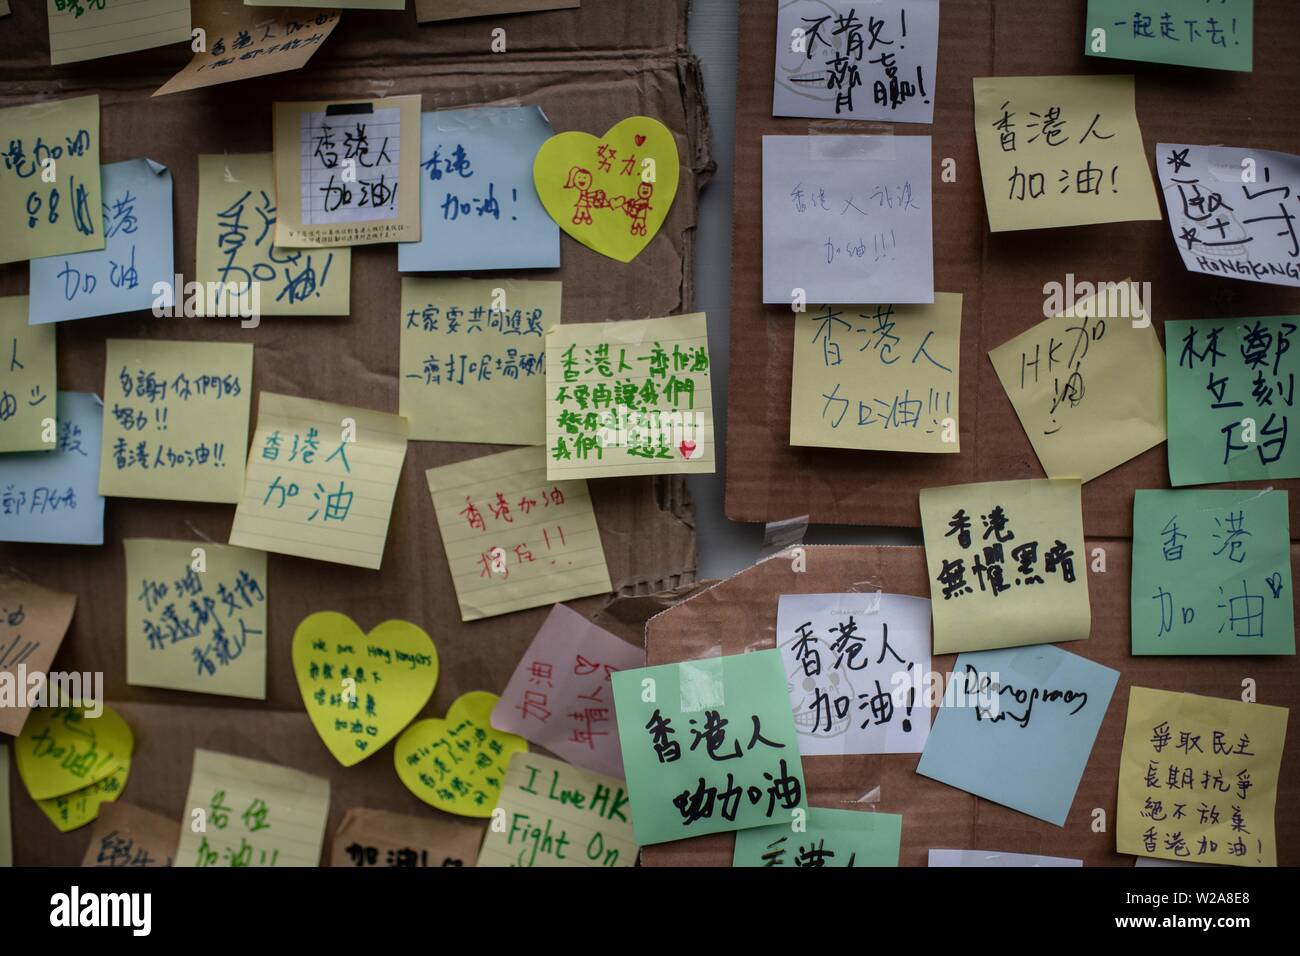 Gli adesivi con messaggi diversi da manifestanti appendere alla parete di fronte West Kowloon Stazione ferroviaria durante la protesta contro la legge in materia di estradizione in Cina. Foto Stock